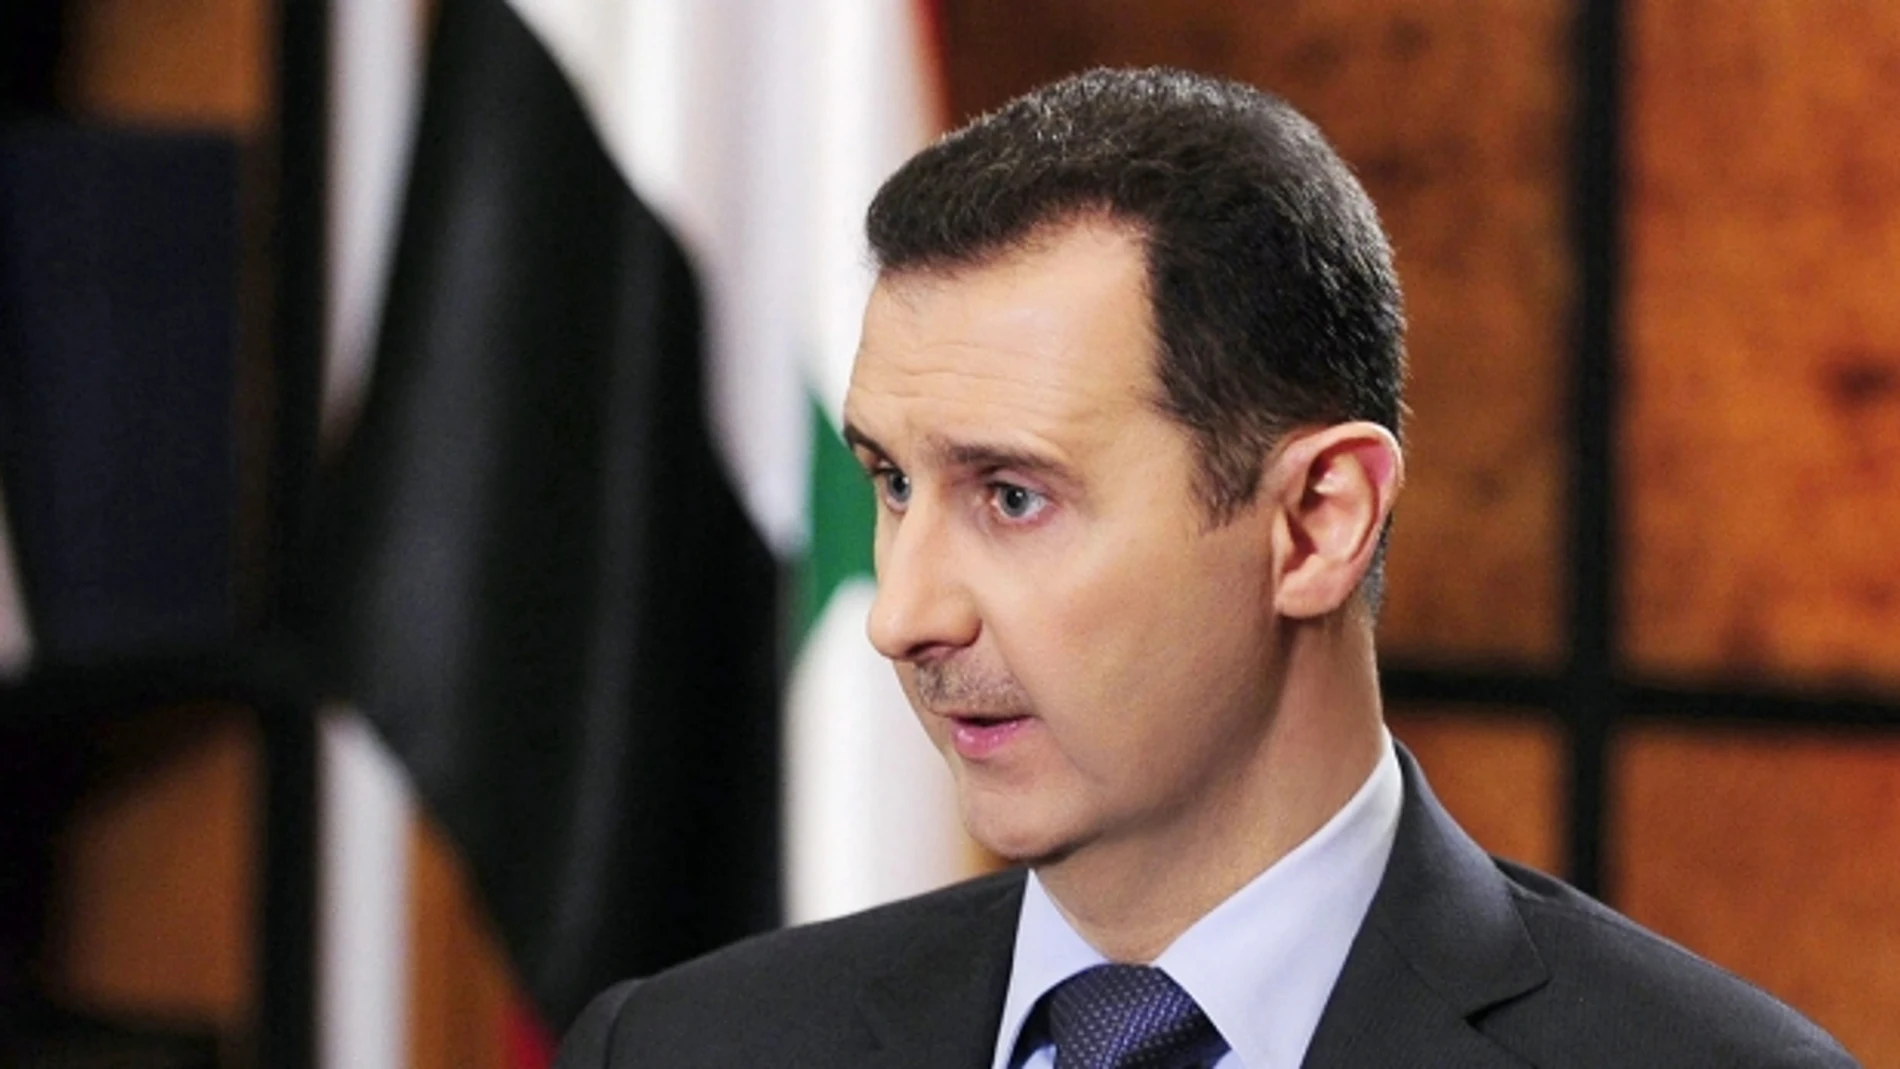 Al Asad en una imagen de archivo